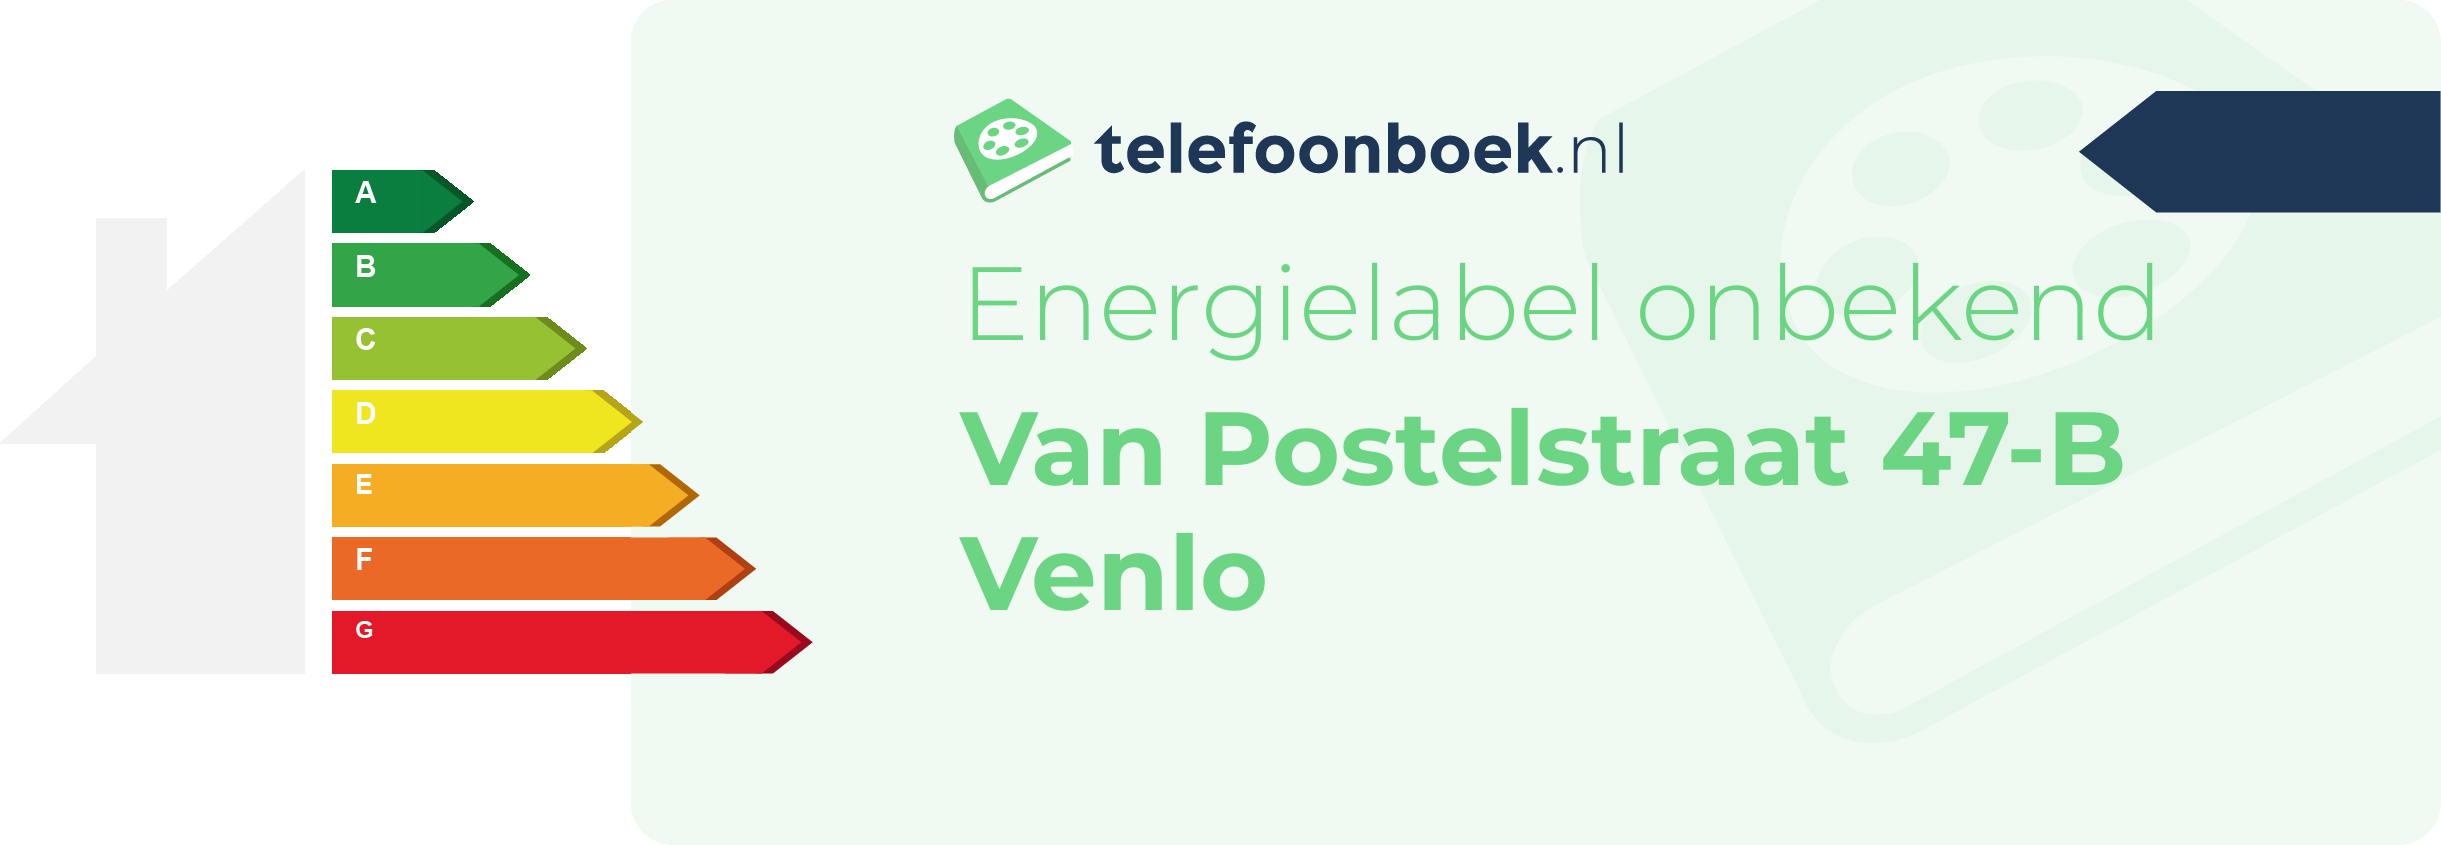 Energielabel Van Postelstraat 47-B Venlo